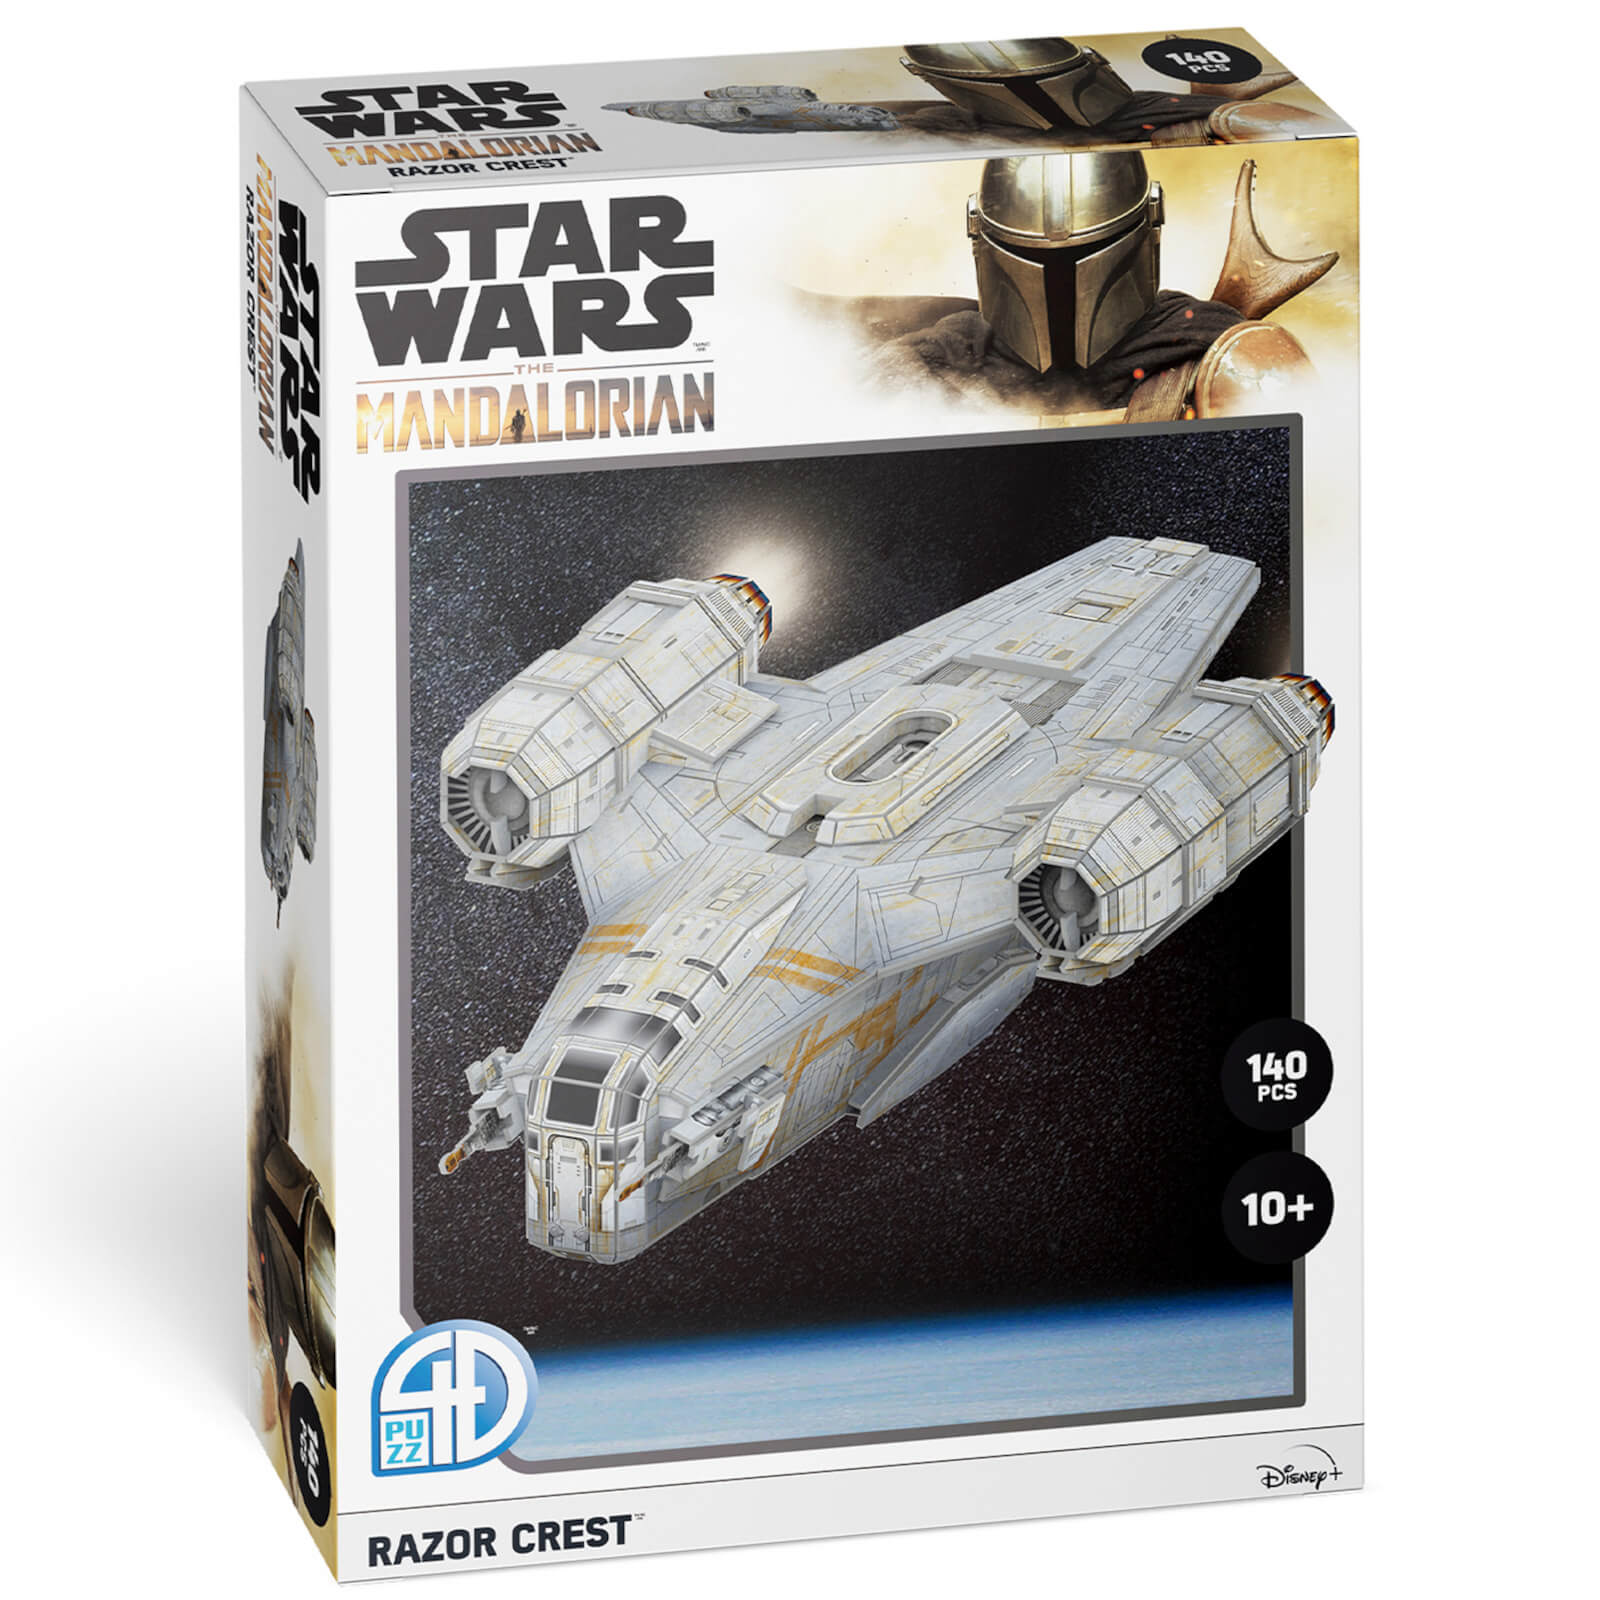 Photos - Other Souvenirs Star Wars: The Mandalorian Razor Crest Paper Core 3D Puzzle Model U08520